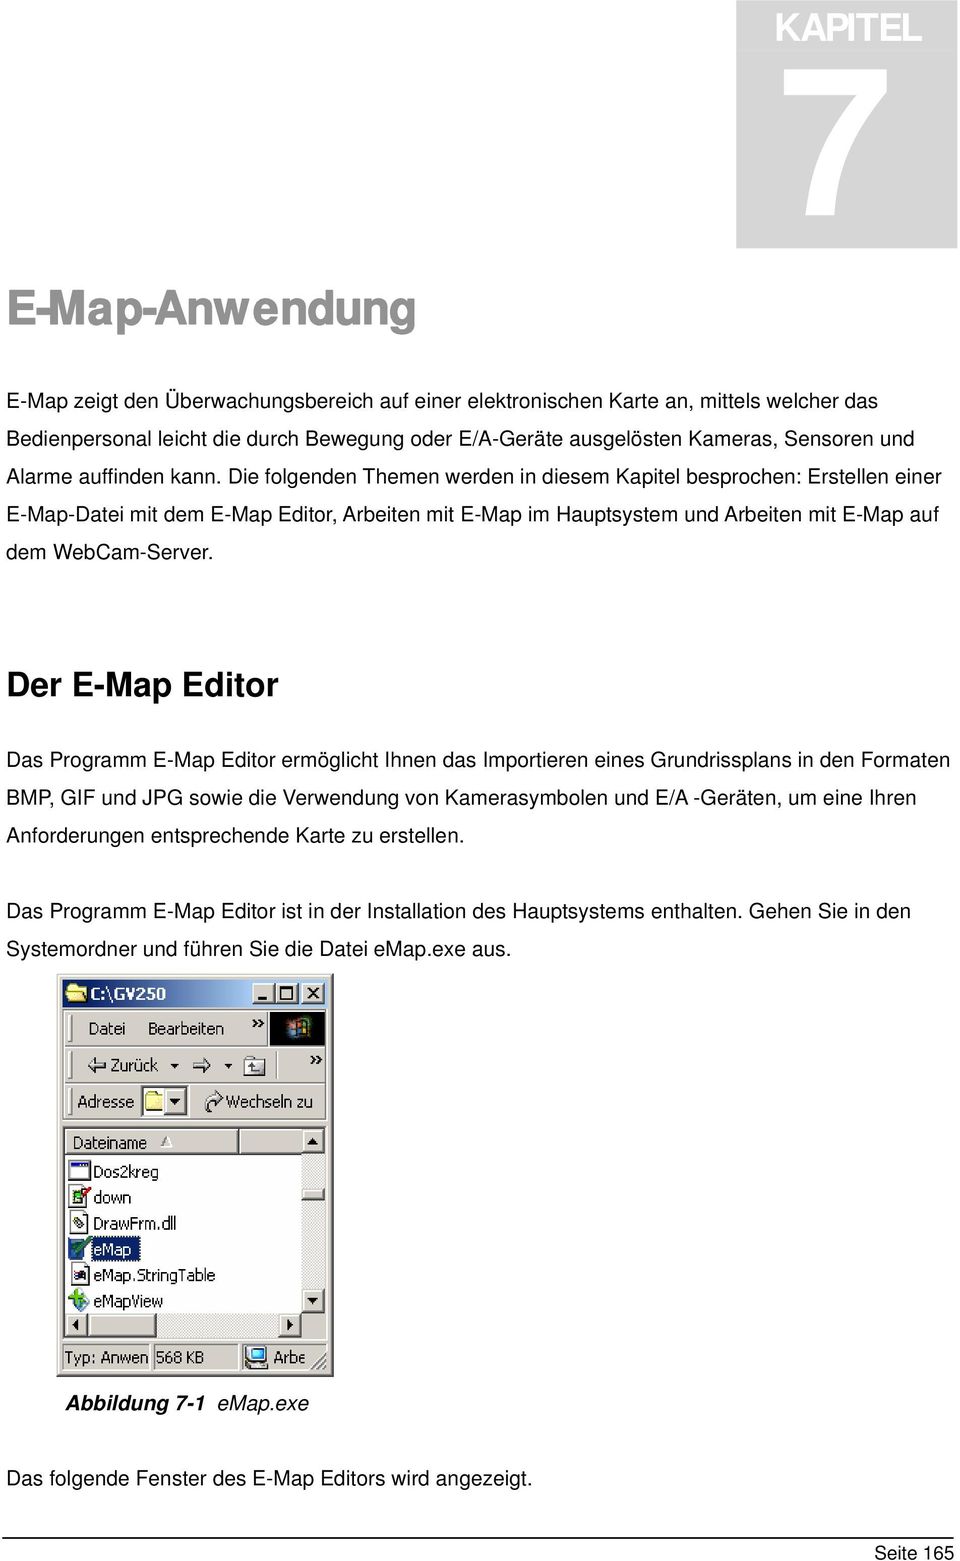 Die folgenden Themen werden in diesem Kapitel besprochen: Erstellen einer E-Map-Datei mit dem E-Map Editor, Arbeiten mit E-Map im Hauptsystem und Arbeiten mit E-Map auf dem WebCam-Server.